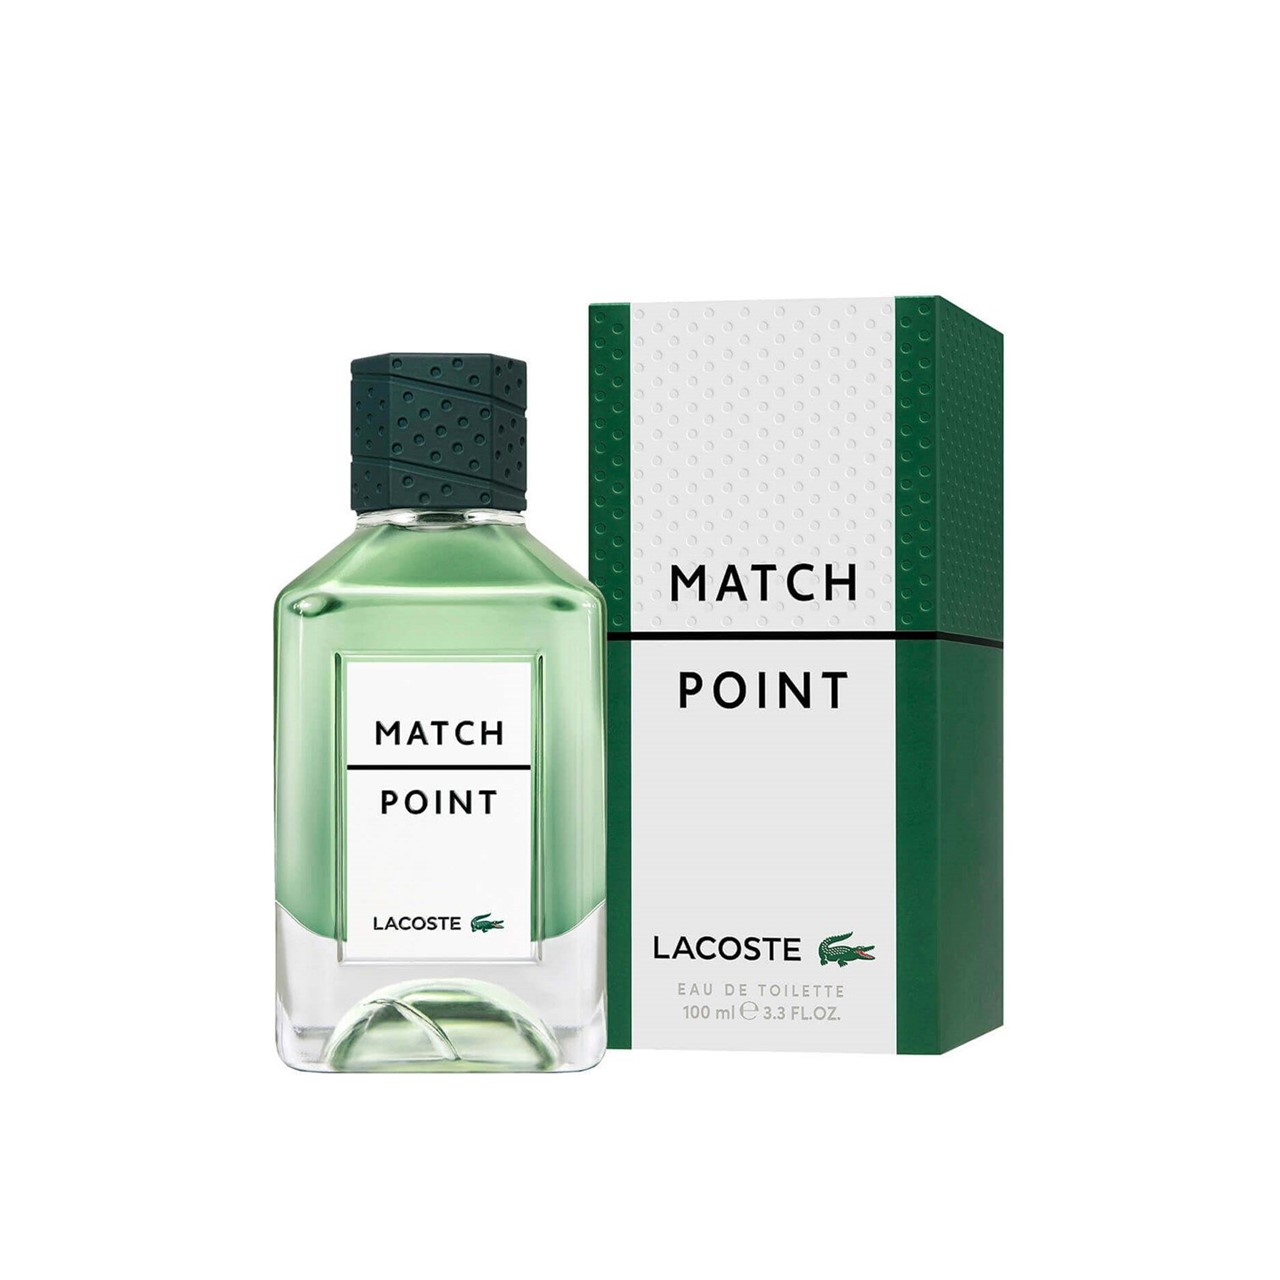 Lacoste Match Point Eau De Toilette 100ml (3.4fl oz)